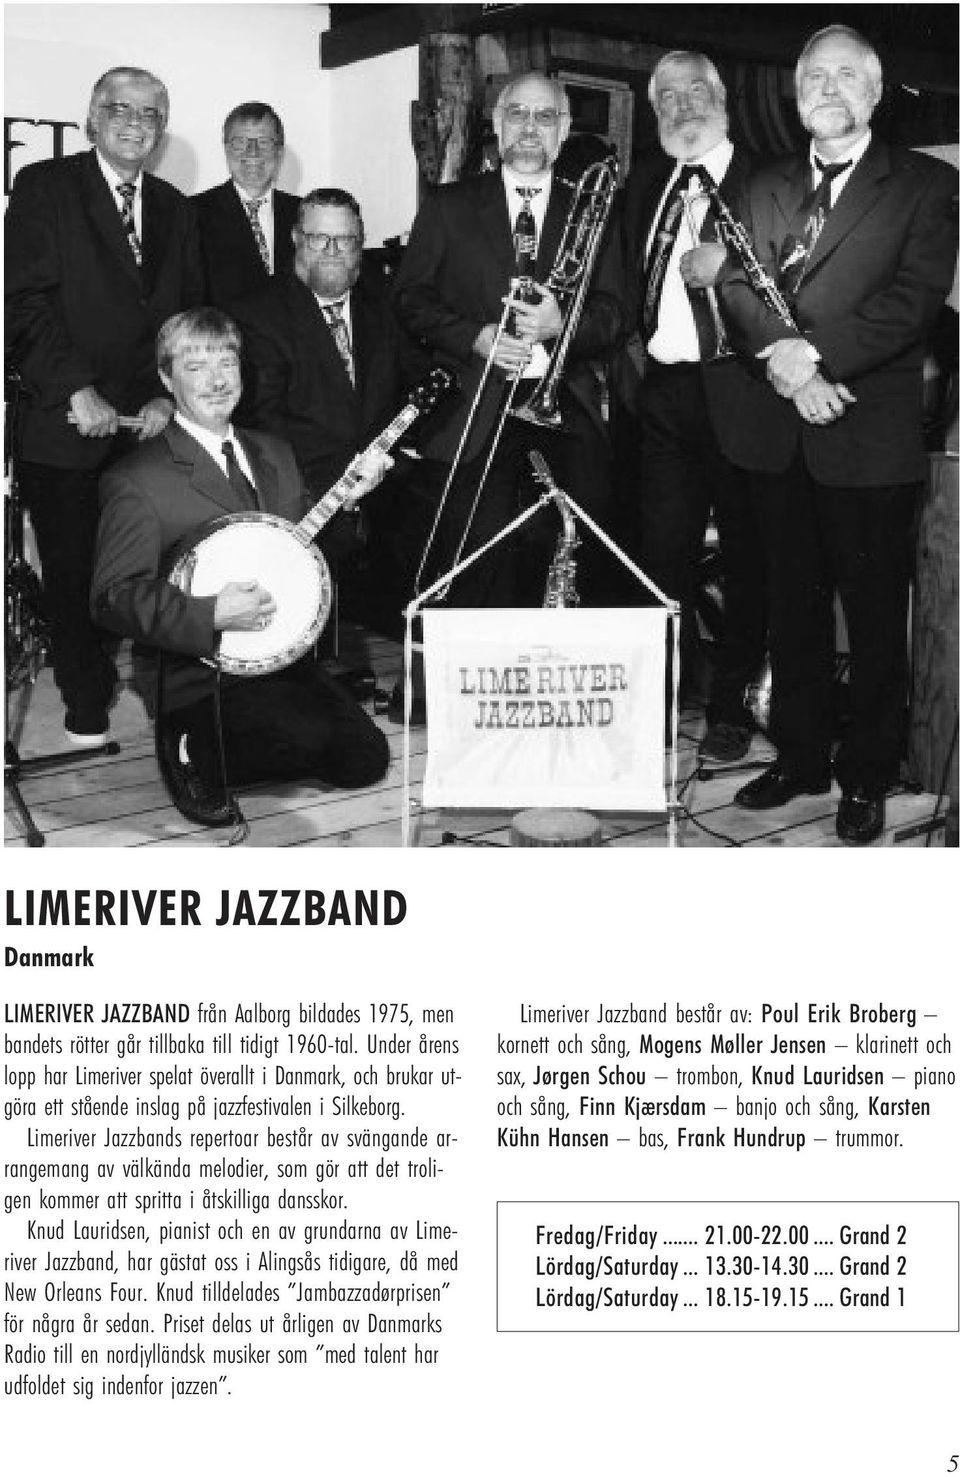 Limeriver Jazzbands repertoar består av svängande arrangemang av välkända melodier, som gör att det troligen kommer att spritta i åtskilliga dansskor.